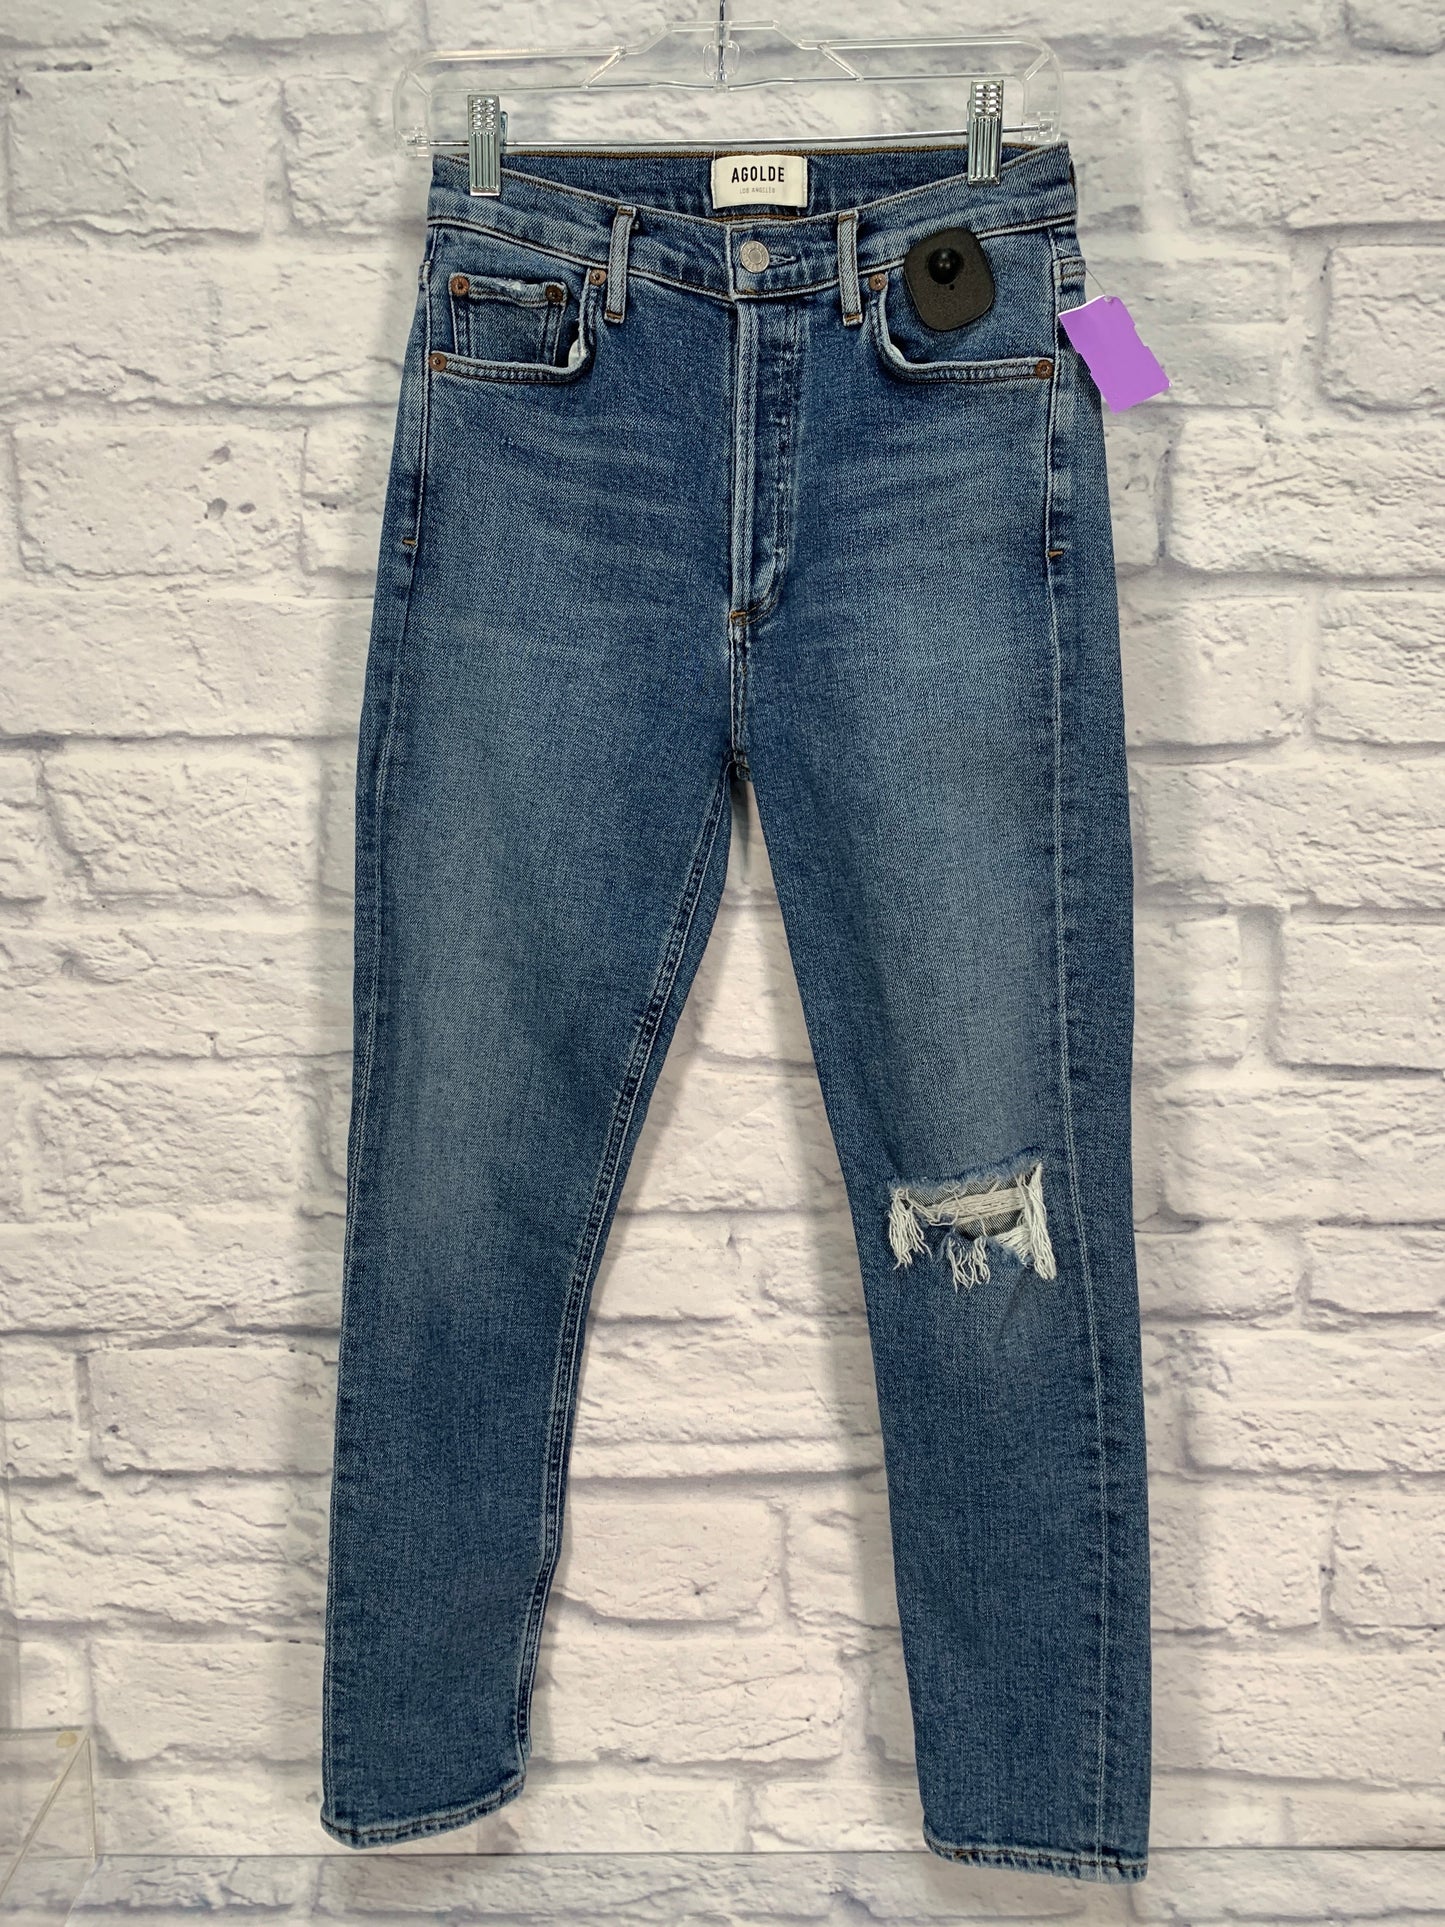 Blue Denim Jeans Designer Agolde, Size 0